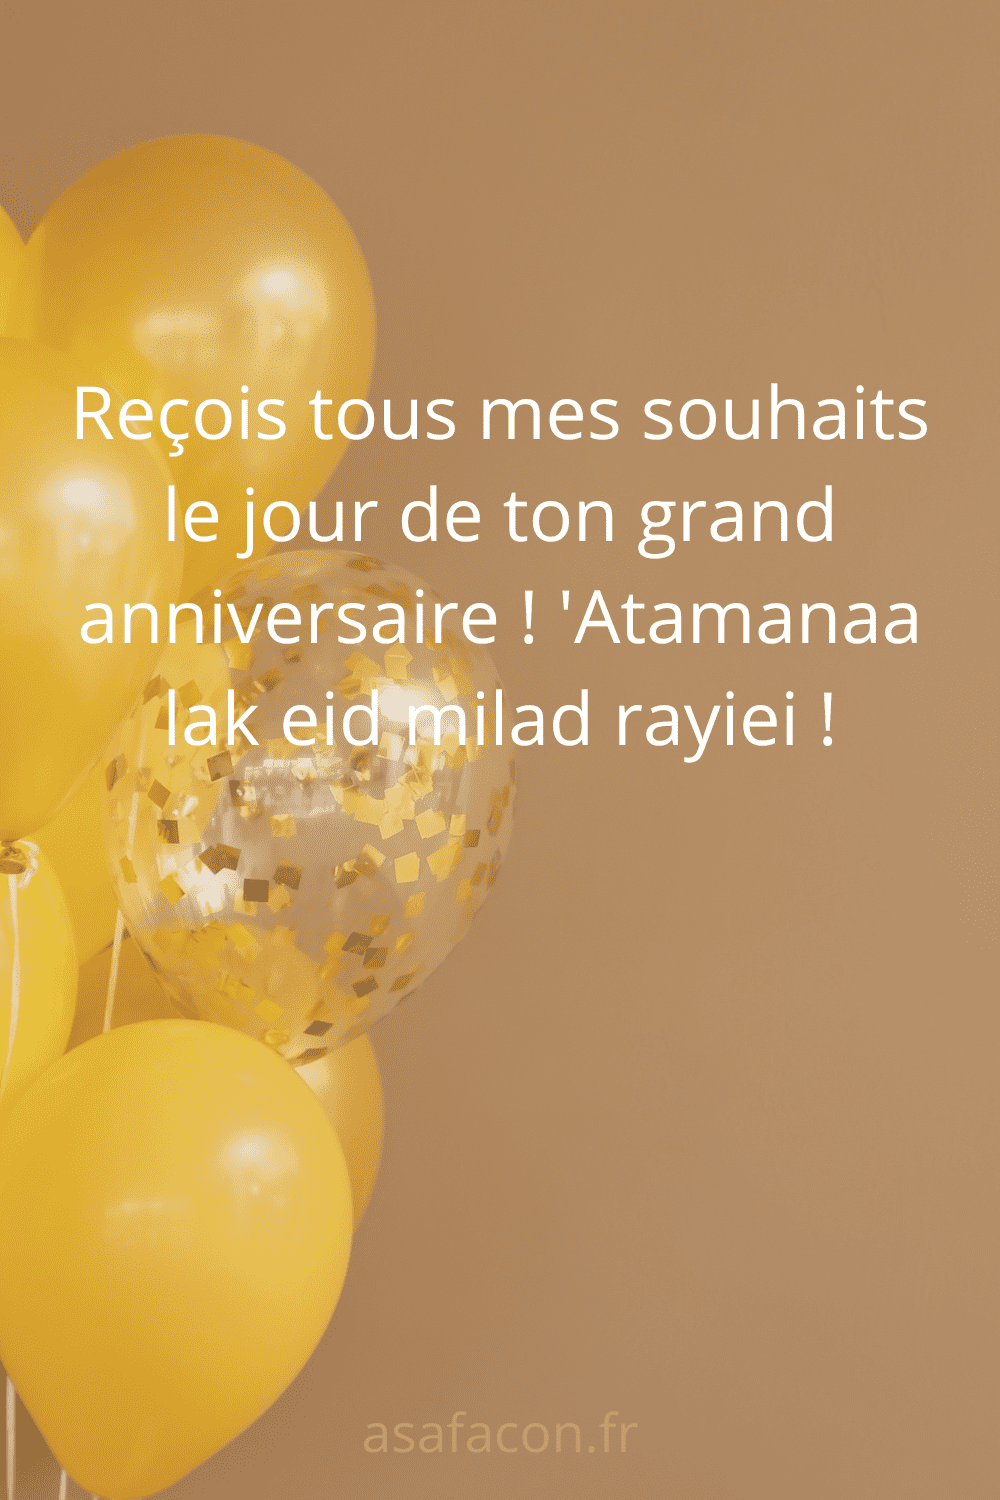 Reçois tous mes souhaits le jour de ton grand anniversaire ! 'Atamanaa lak eid milad rayiei !